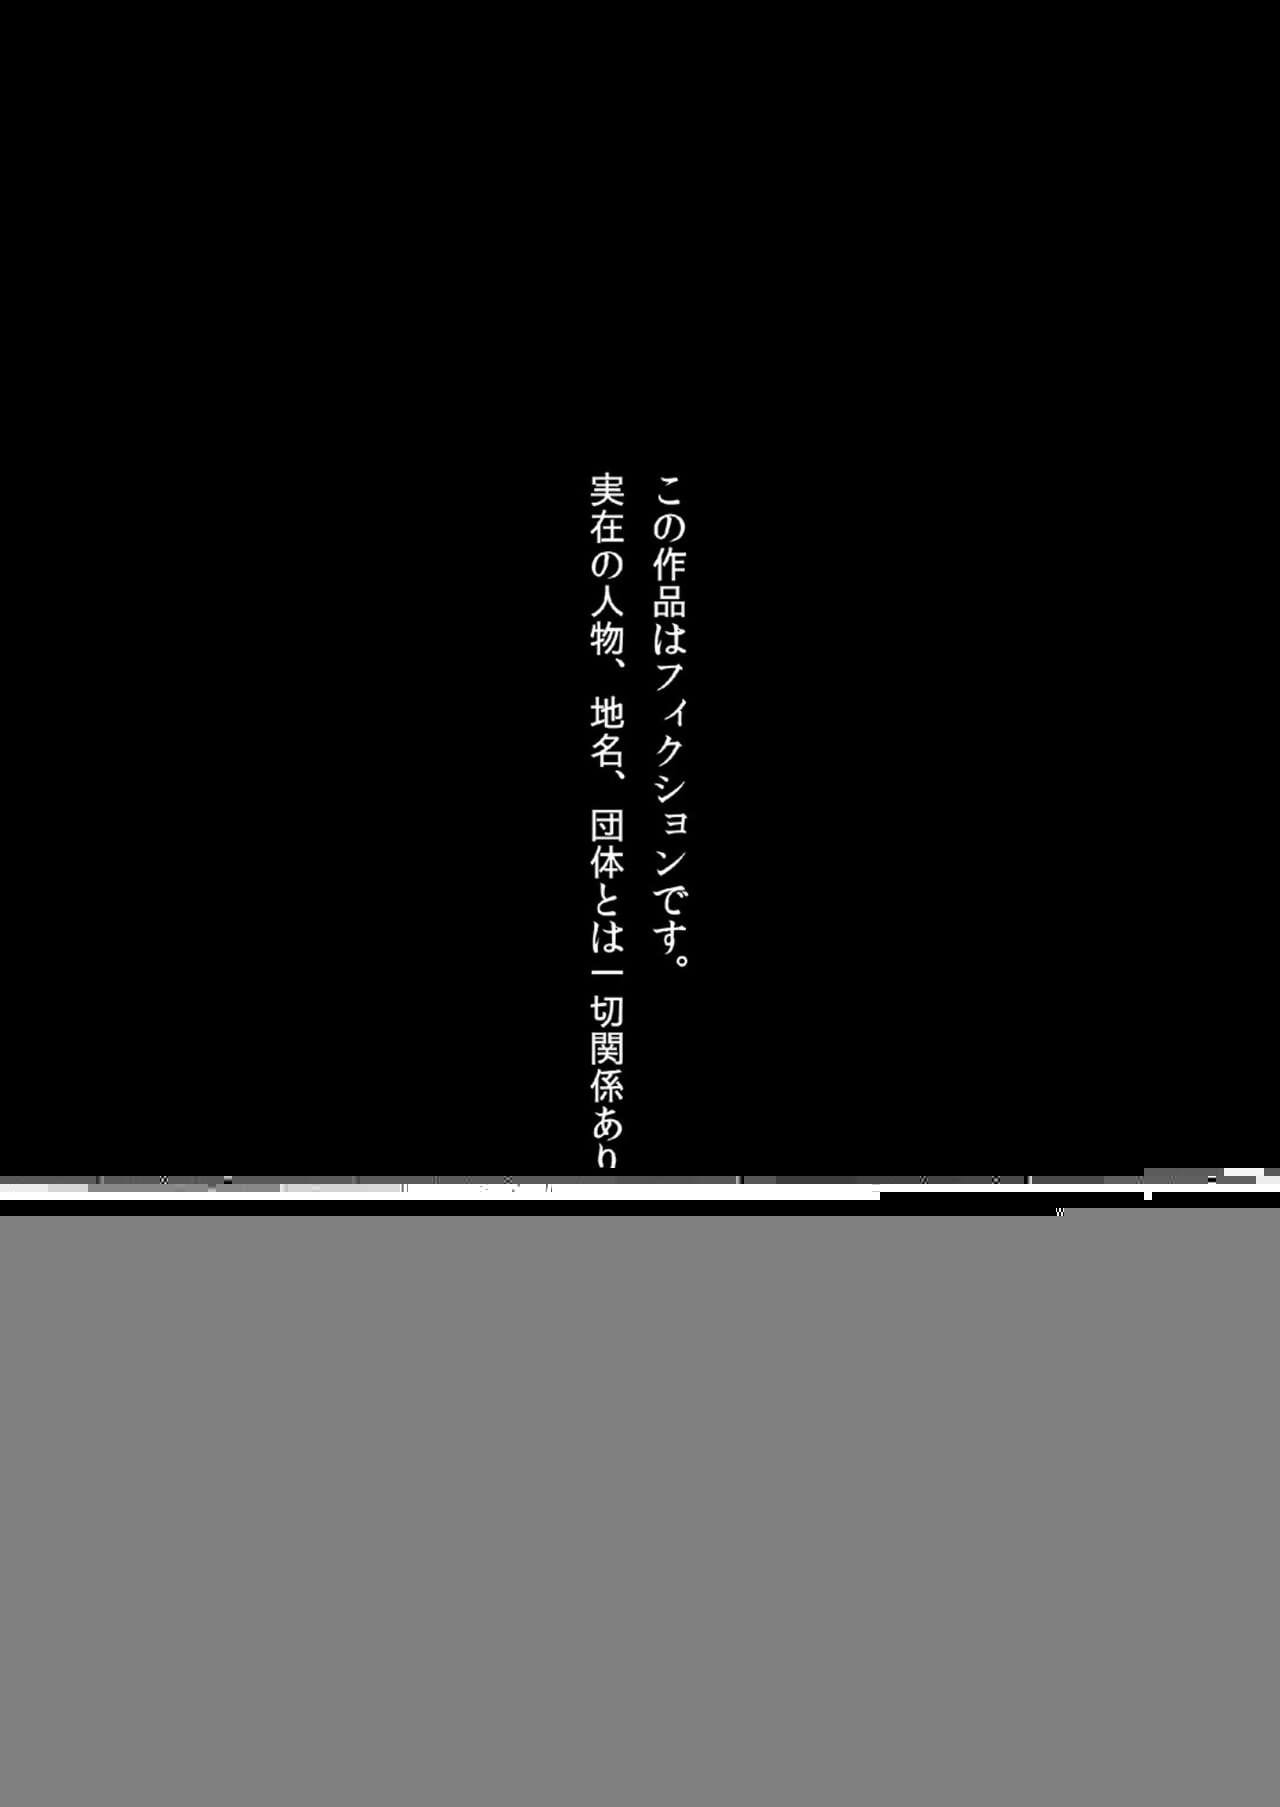 comic1☆13 nikumaki Speck nikujuuhachi inu tsuwara nishiki emaki・kujira keine inanaki joukan digital